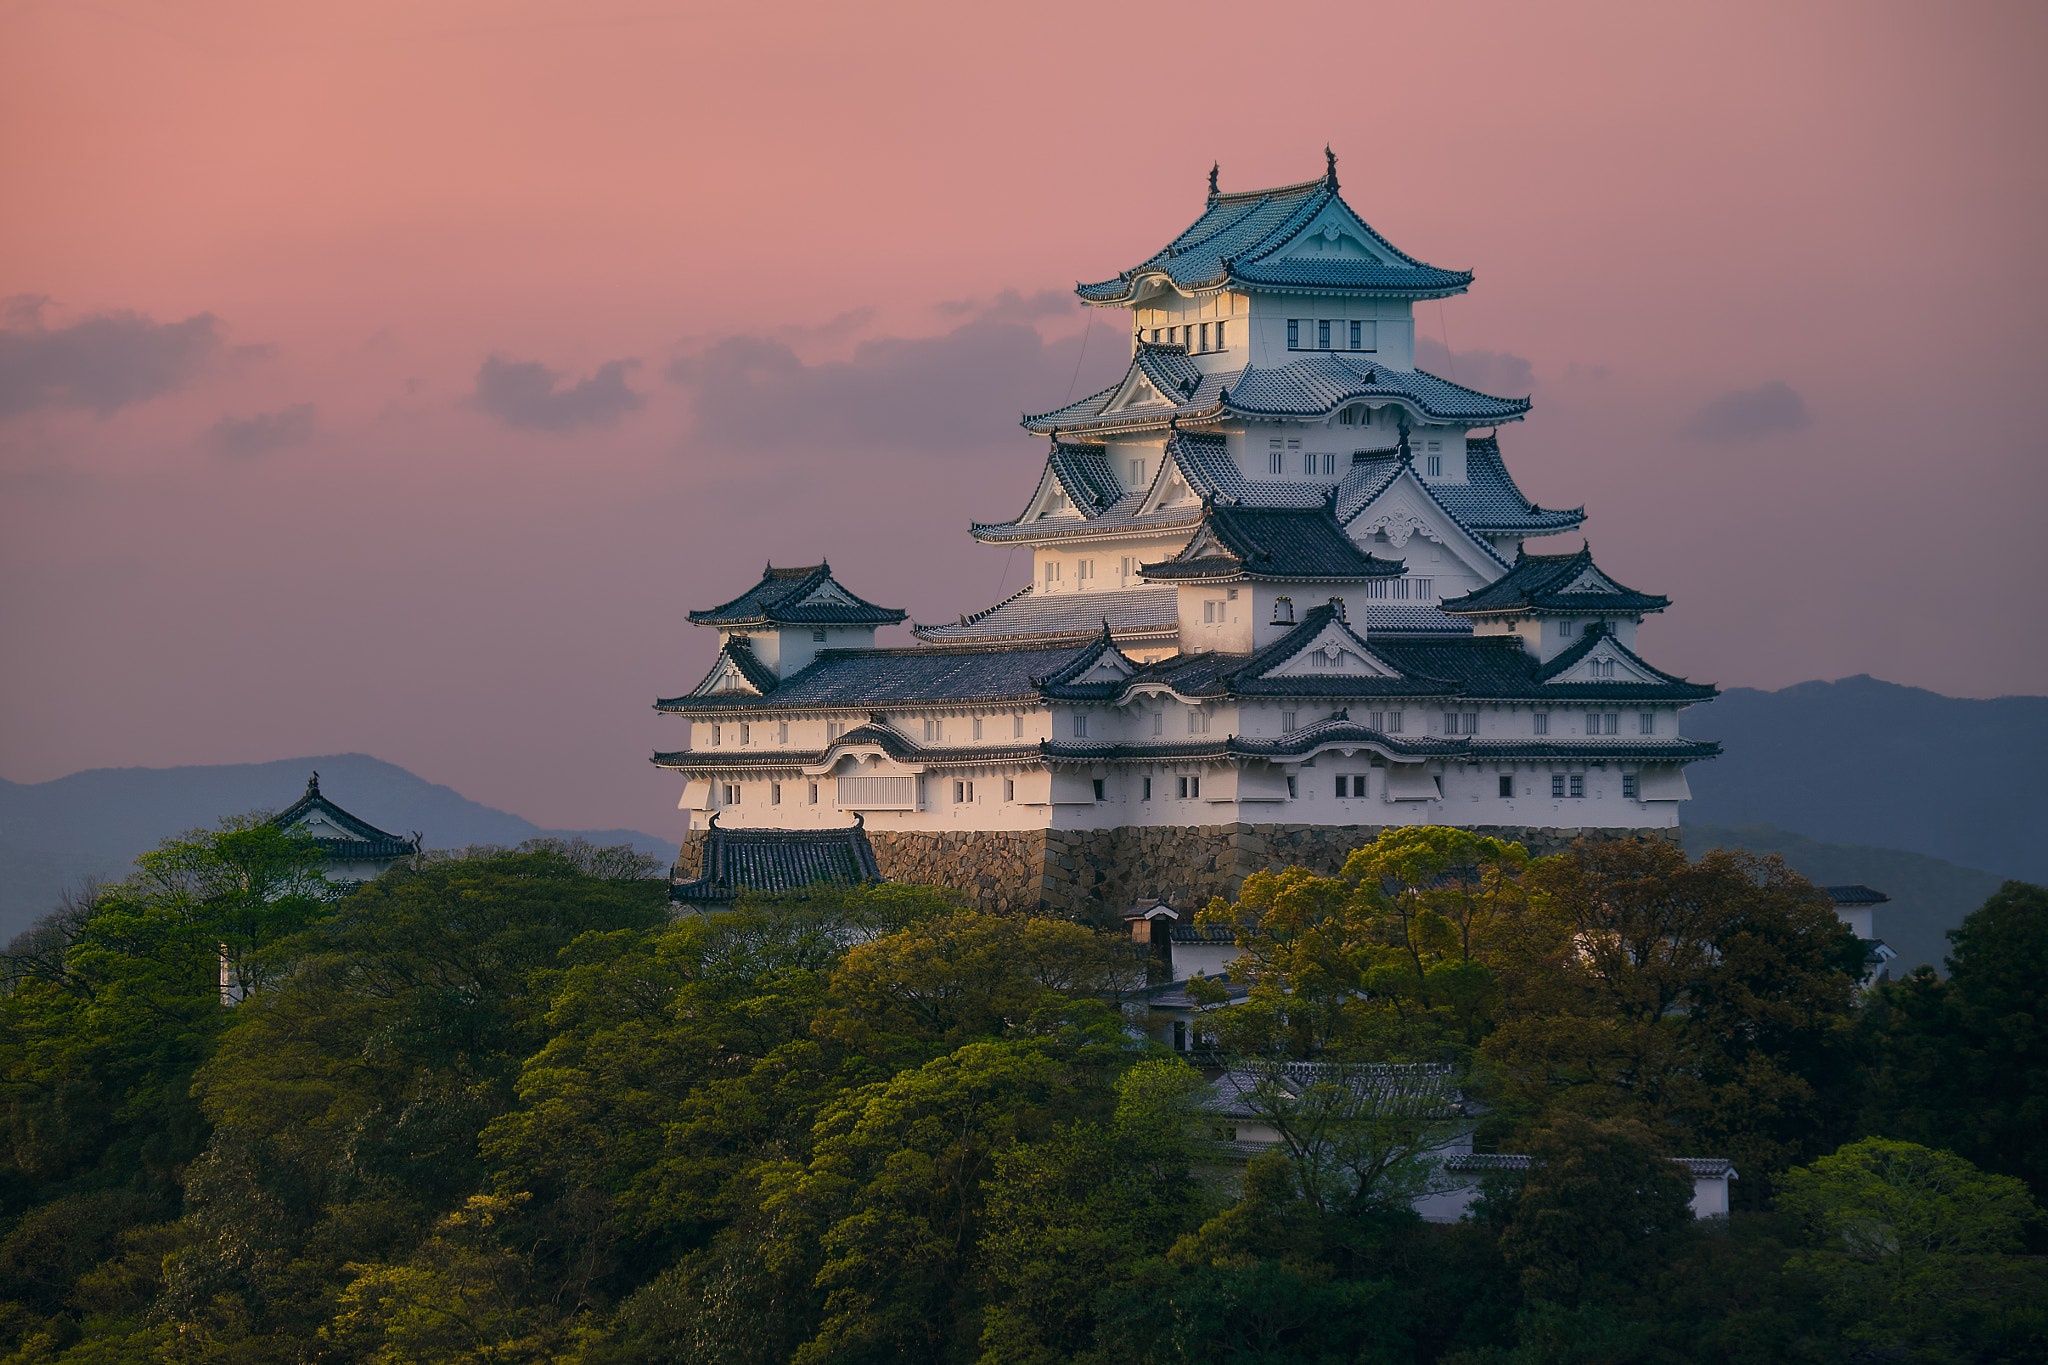 Скачать обои бесплатно Замки, Замок, Япония, Сделано Человеком картинка на рабочий стол ПК